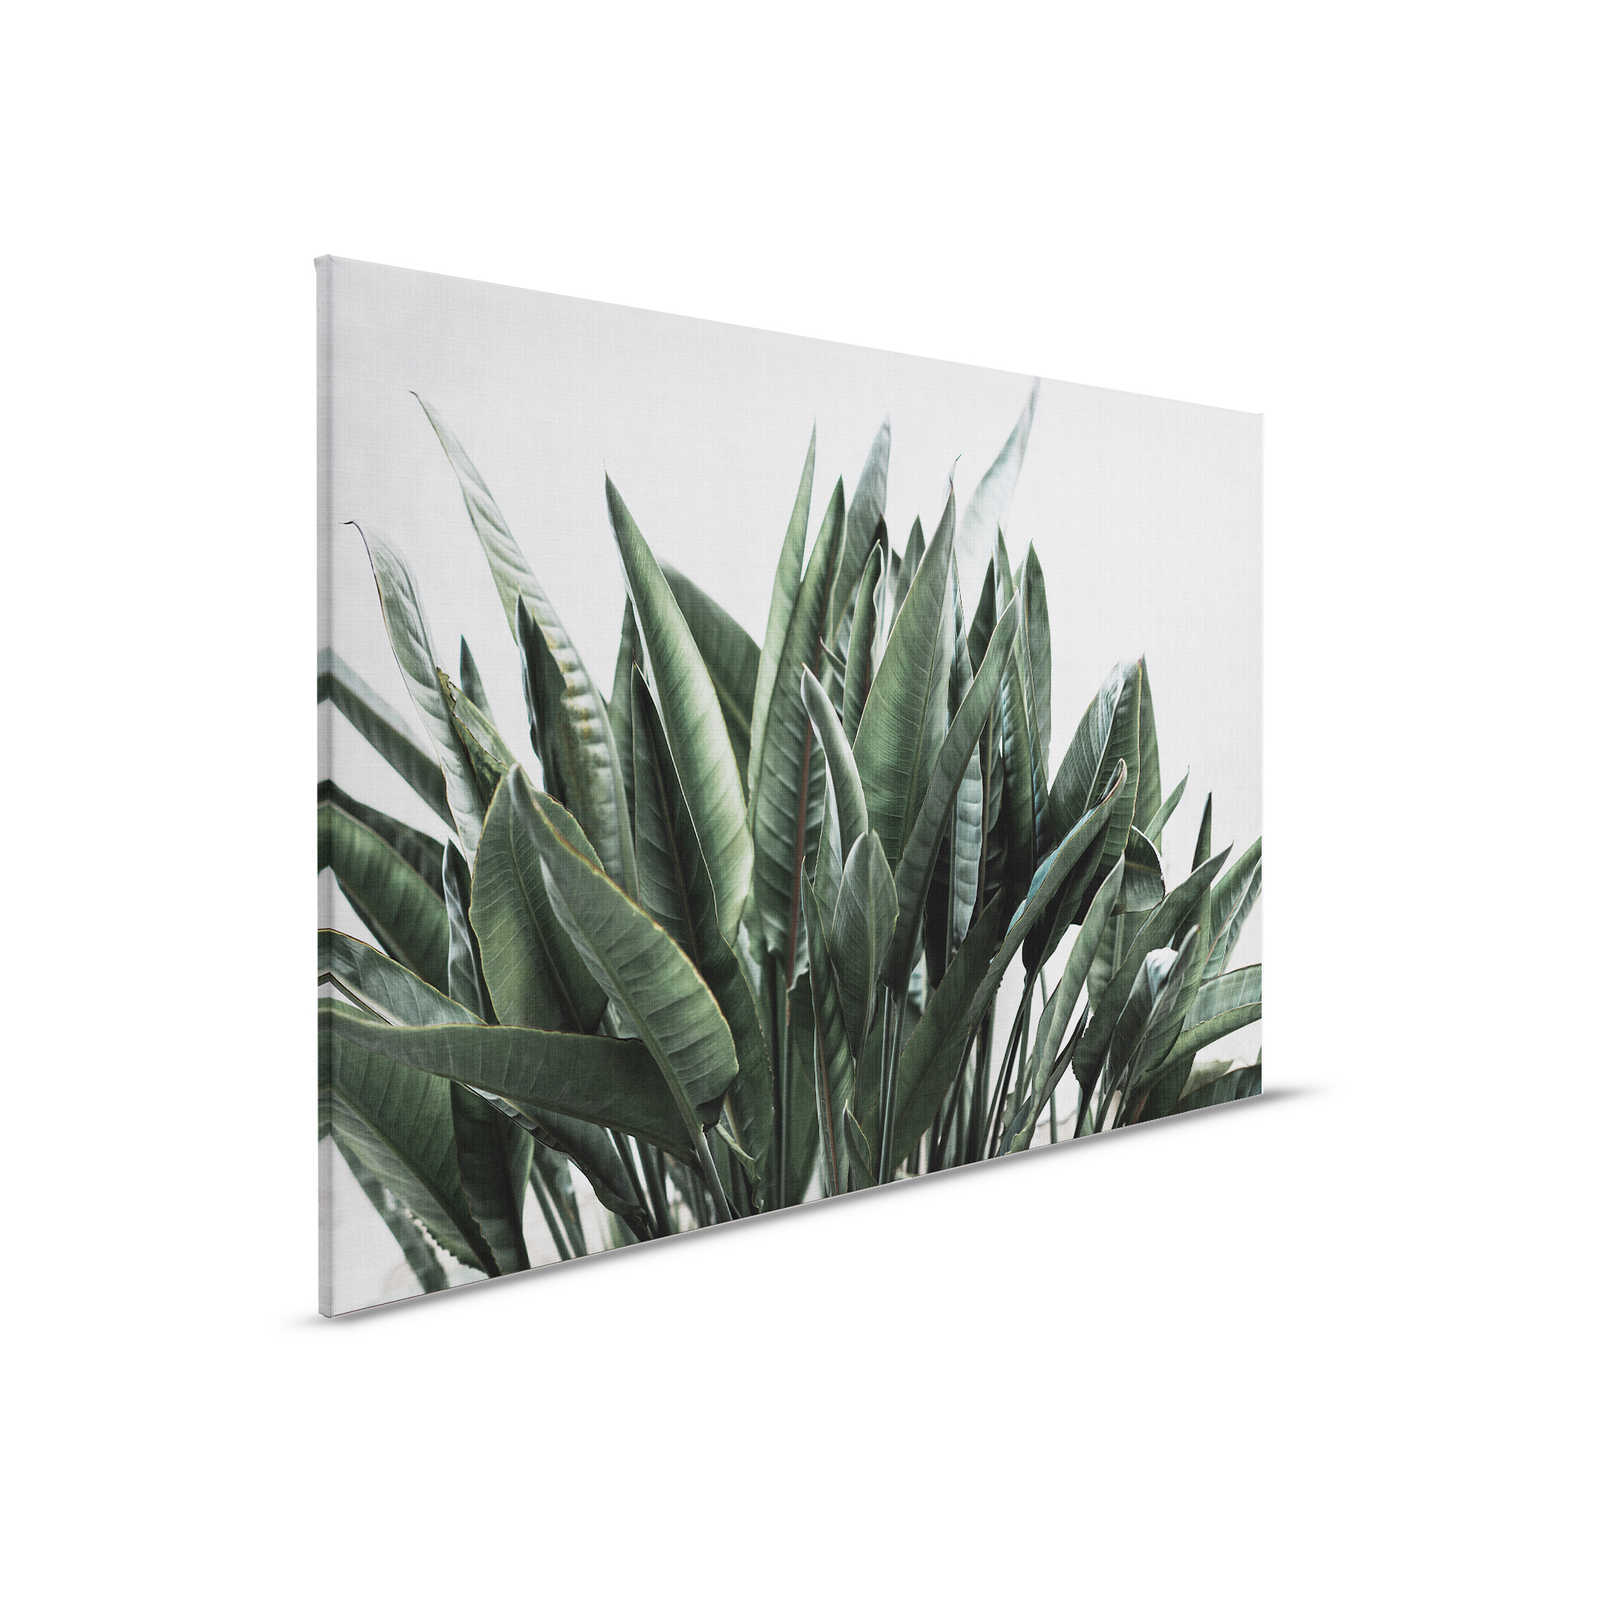 Jungla urbana 2 - Cuadro lienzo hojas de palmera, estructura lino natural plantas exóticas - 0,90 m x 0,60 m
